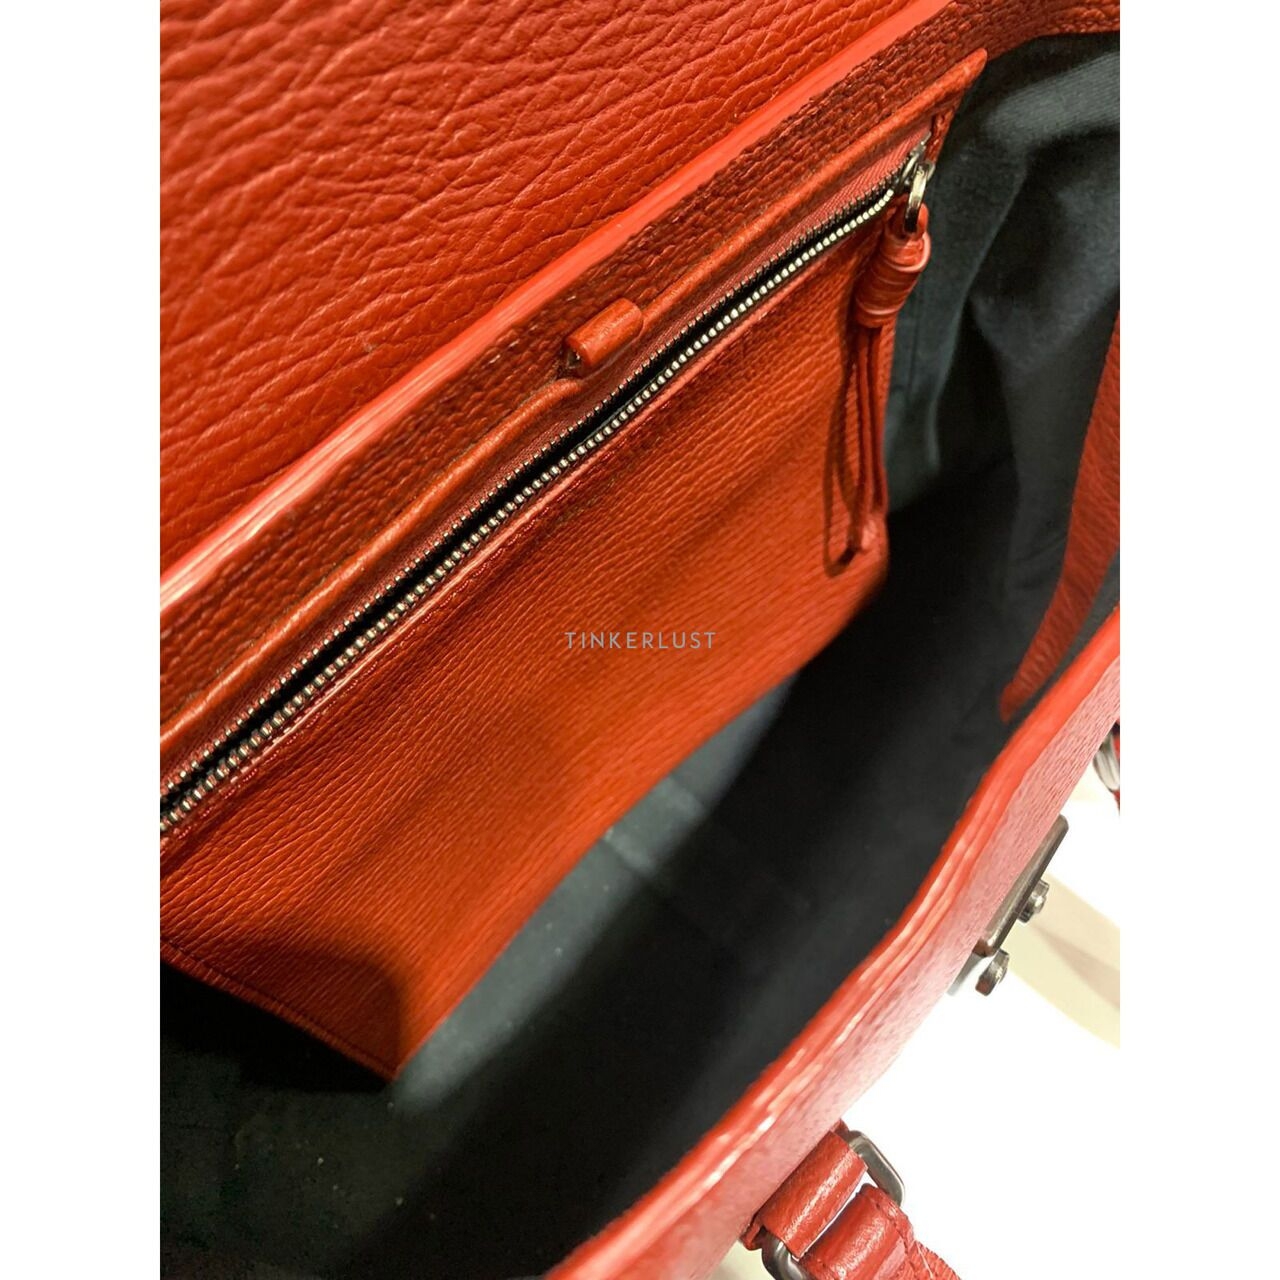 3.1 Phillip Lim Pashli Medium Leather Red 2019 Satchel